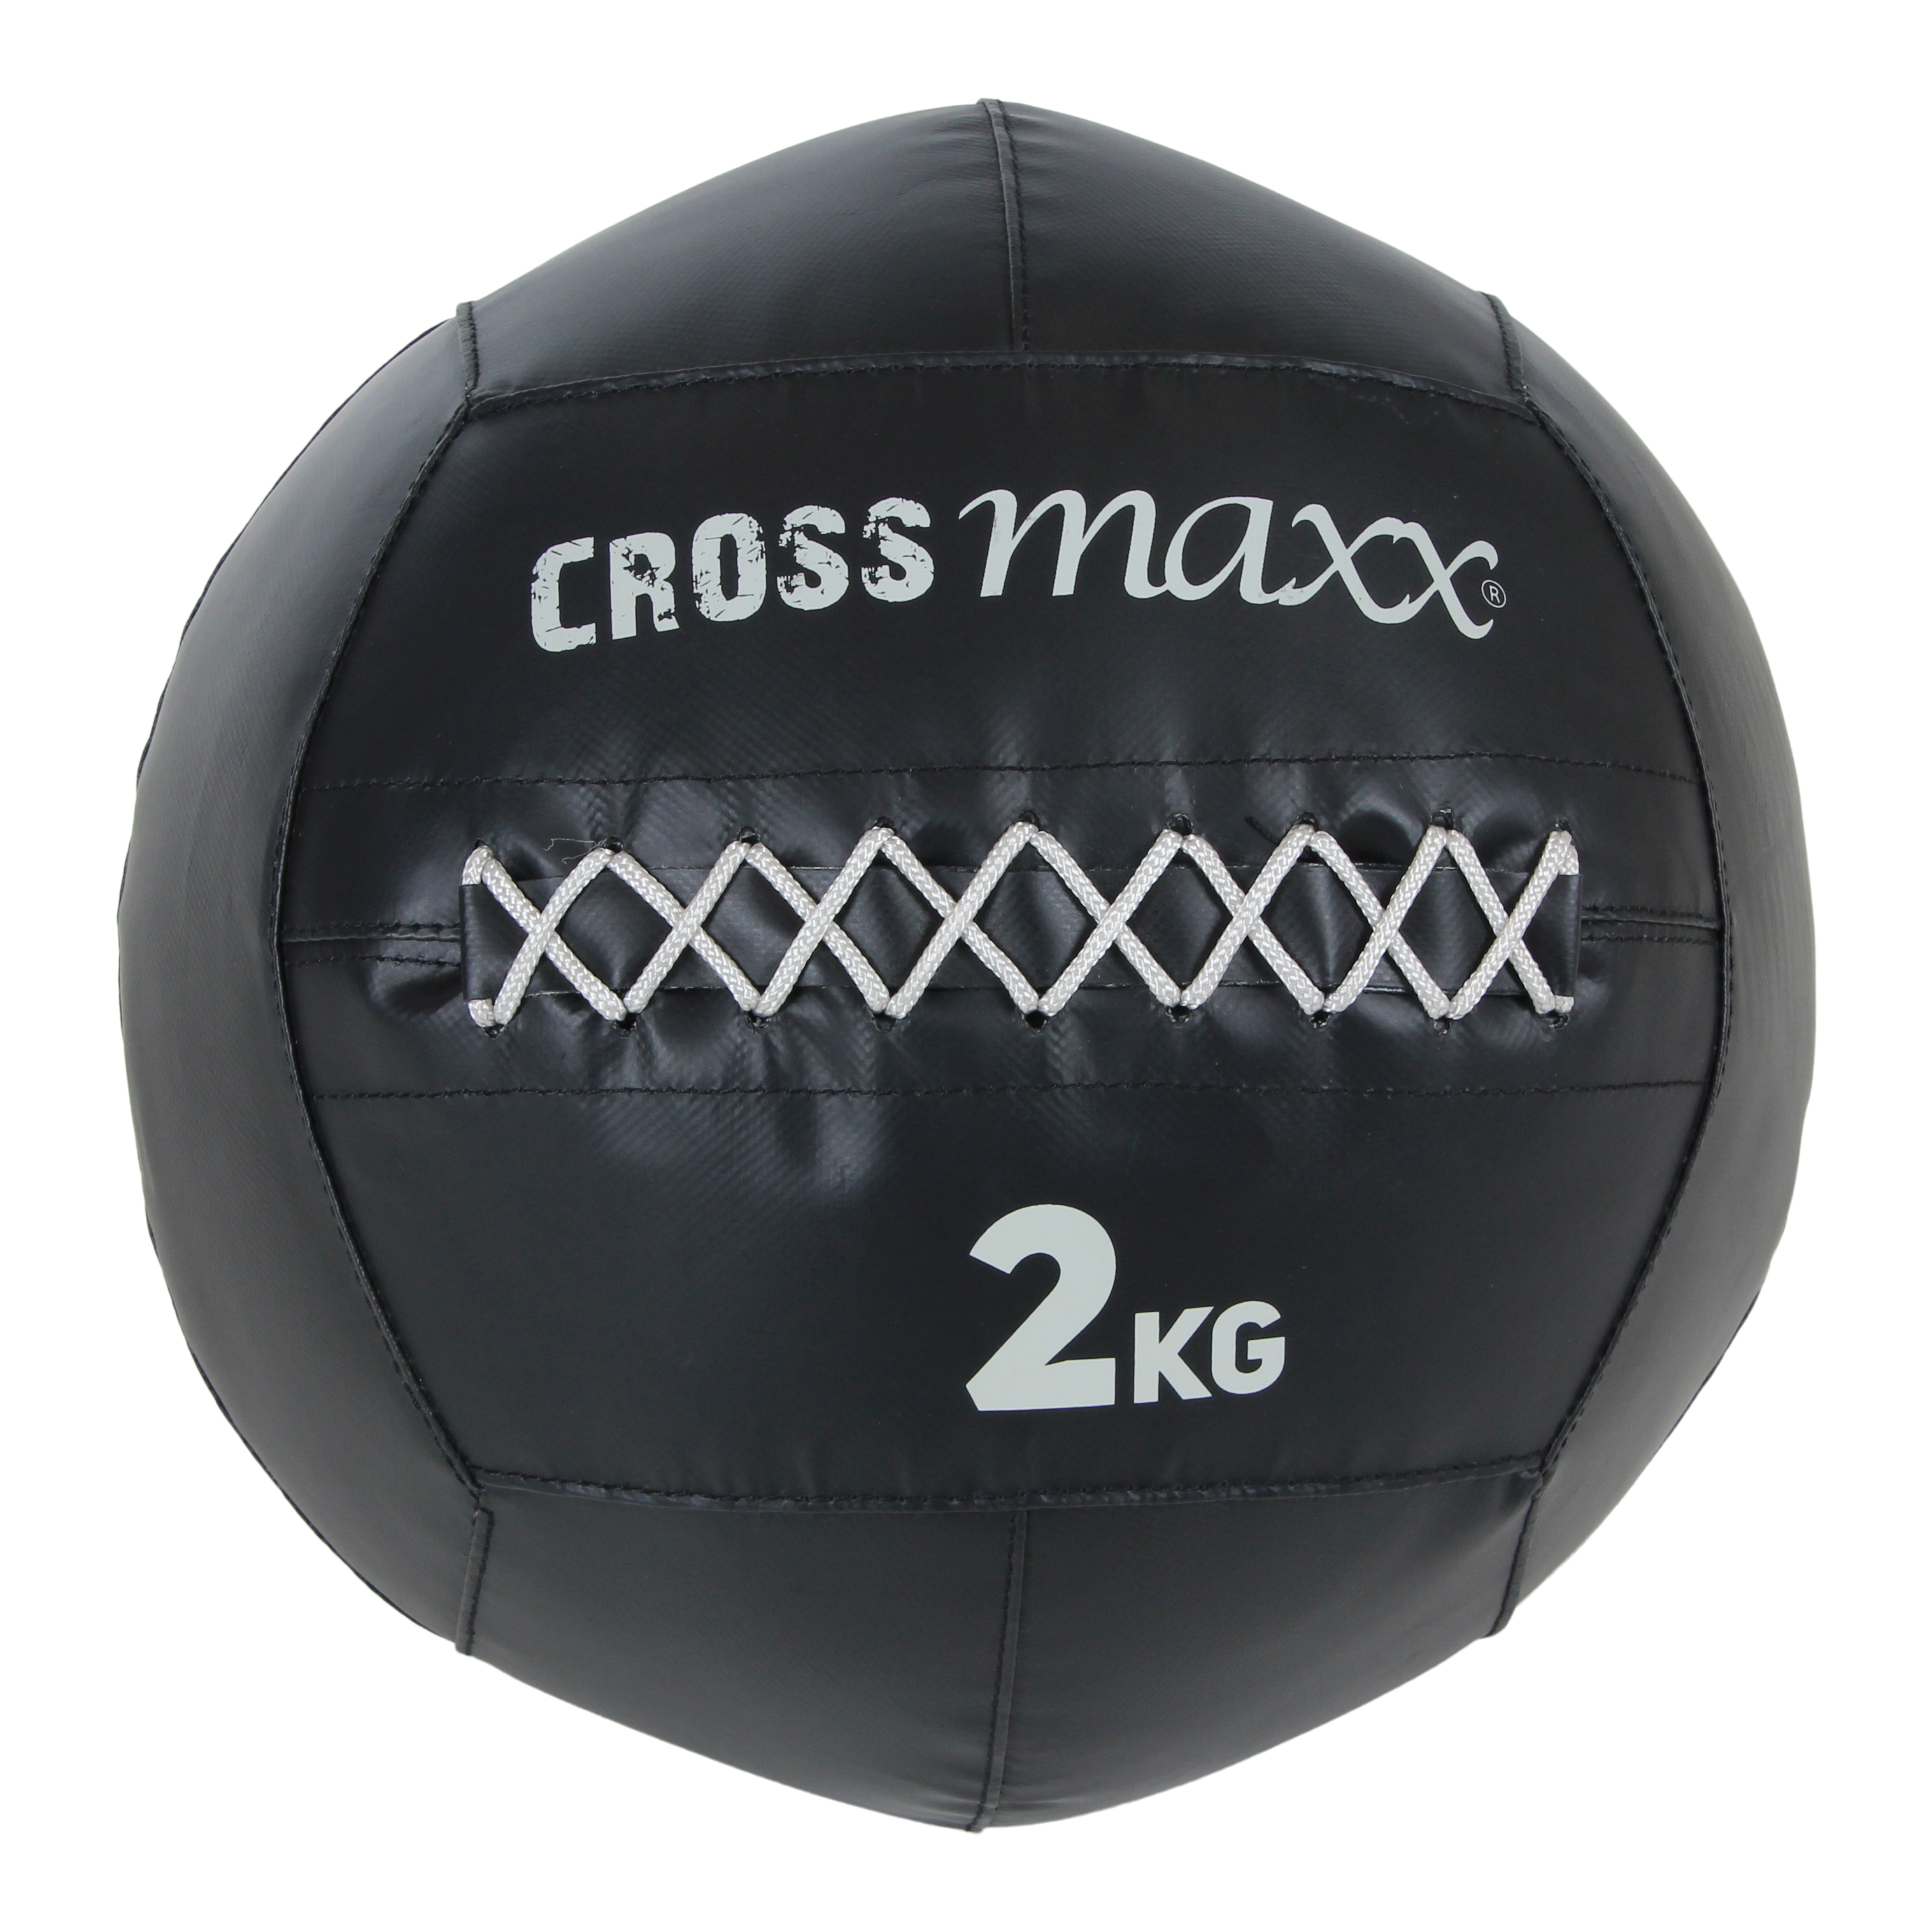 Lifemaxx Crossmaxx Pro Wall Ball - 2 kg